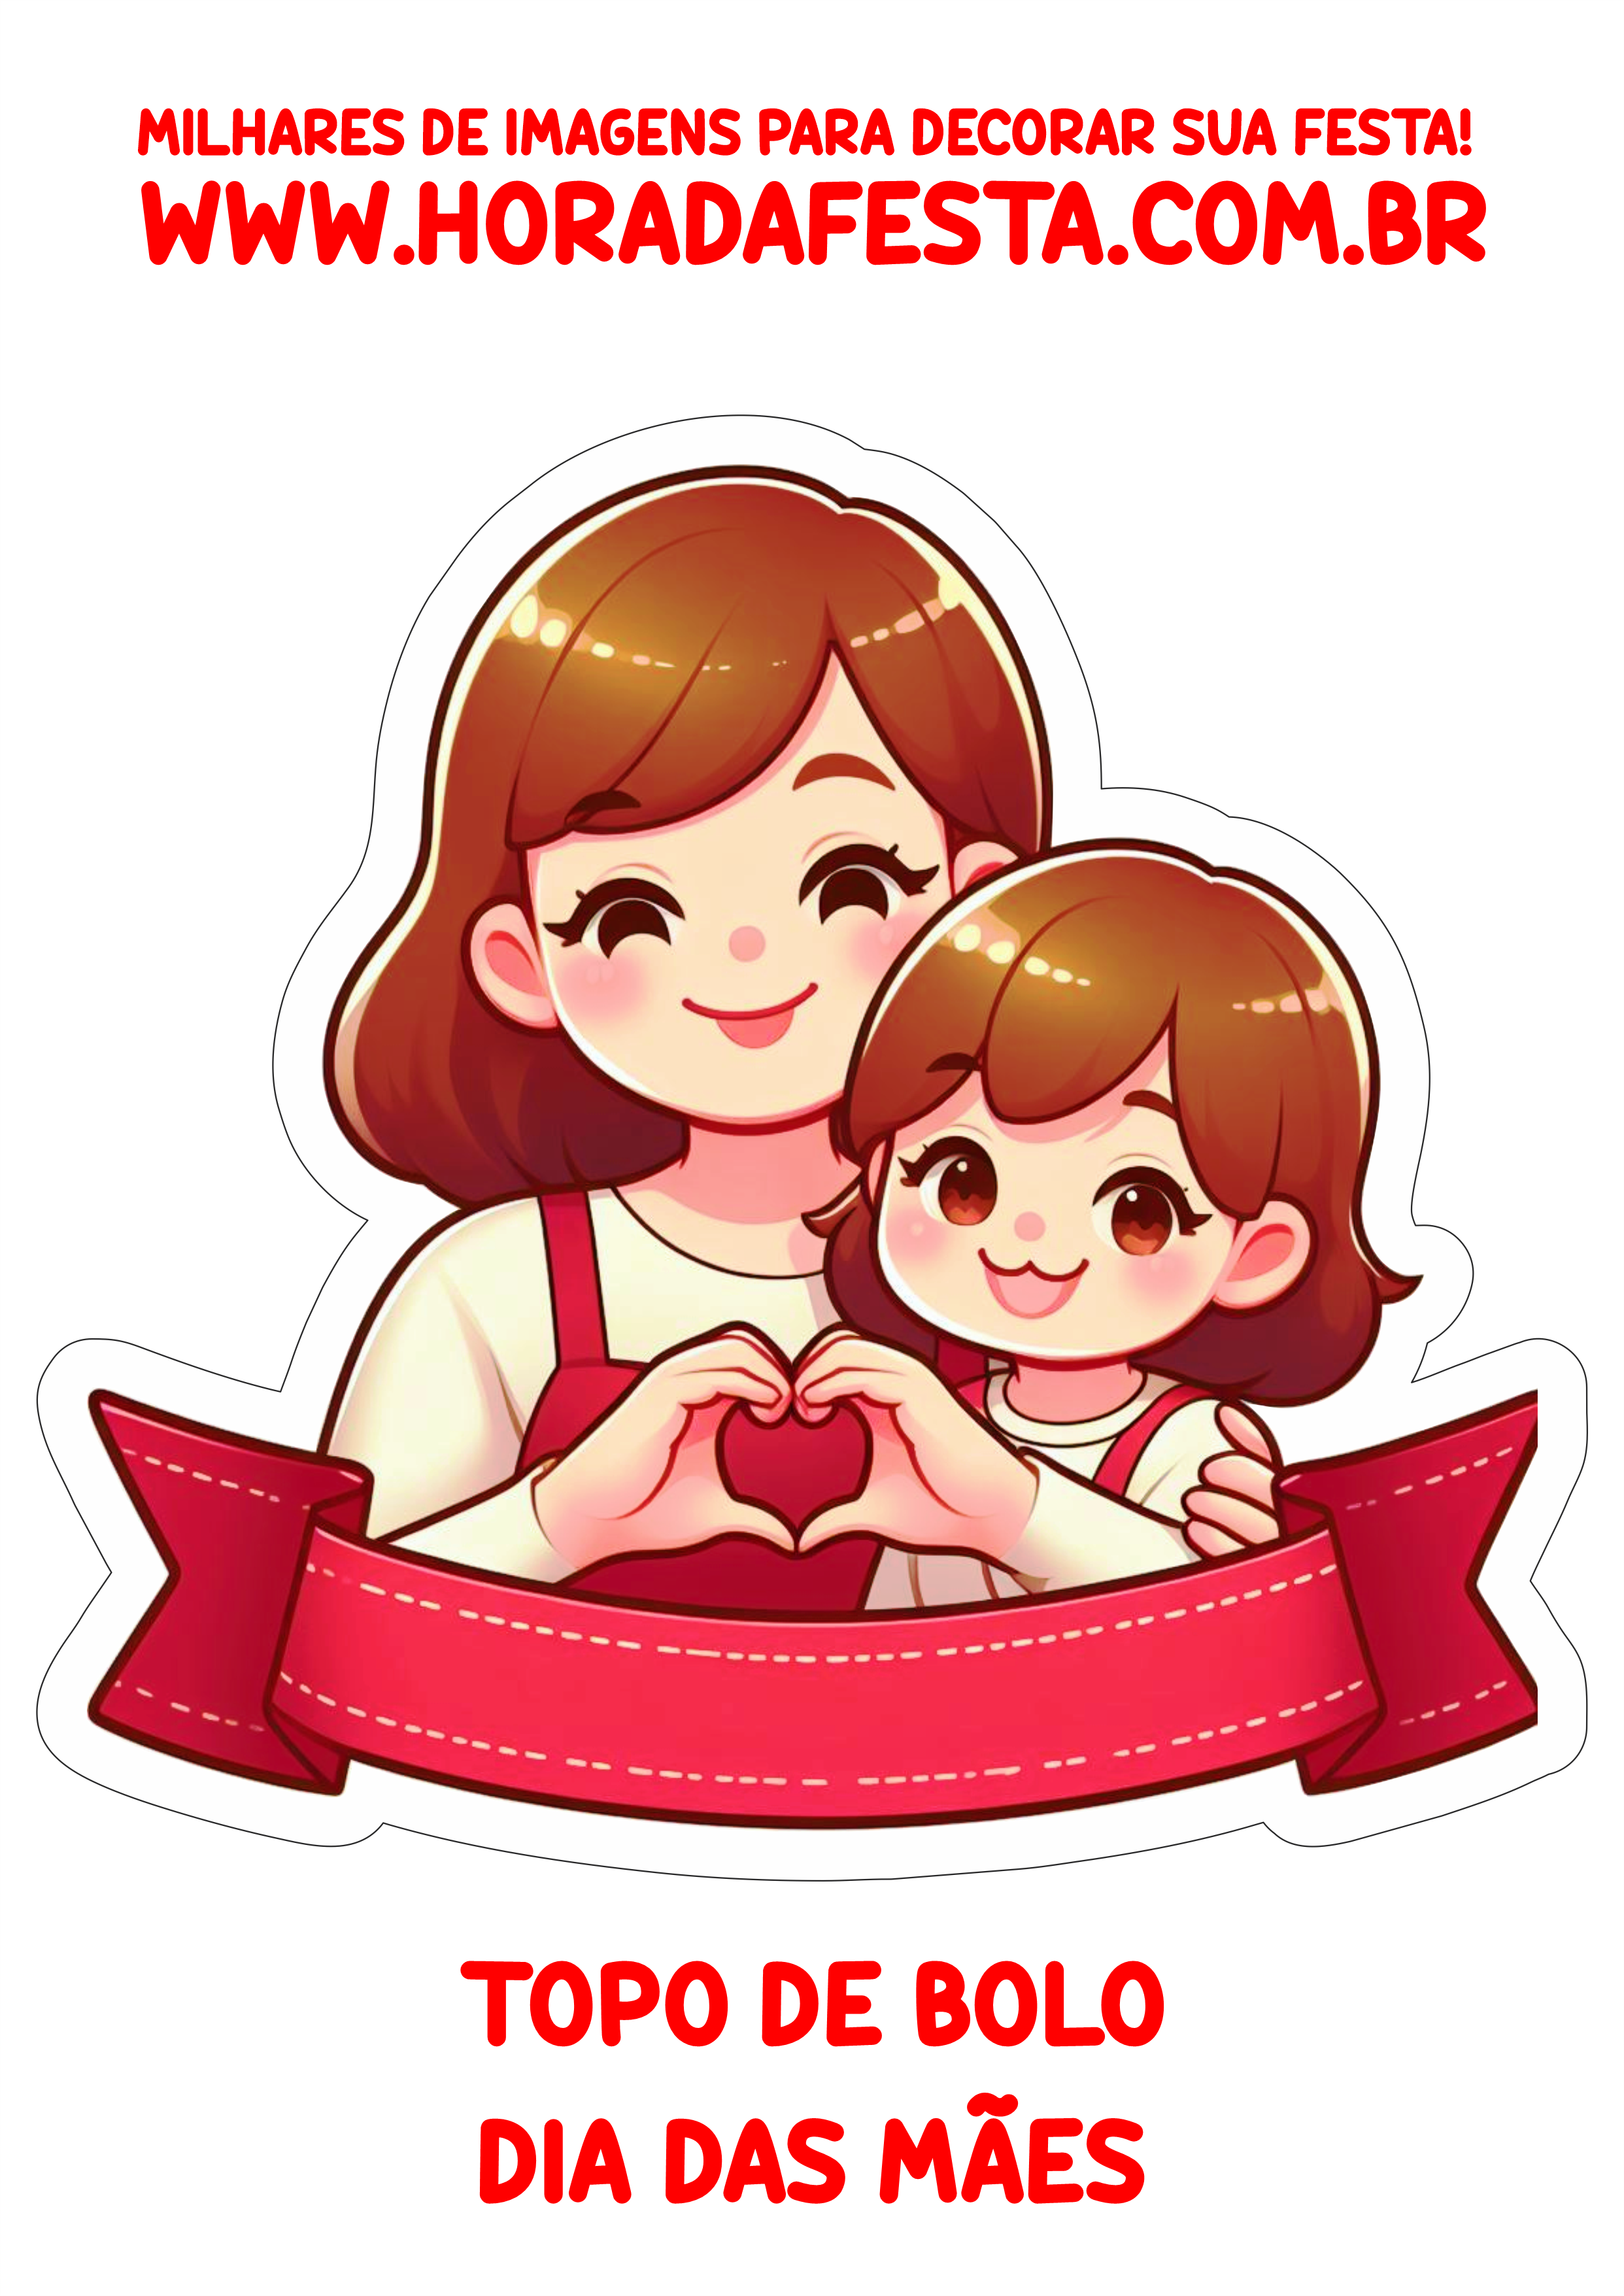 Topo de bolo para imprimir decoração dia das mães faixa happy mother’s day design download free artes gráficas png